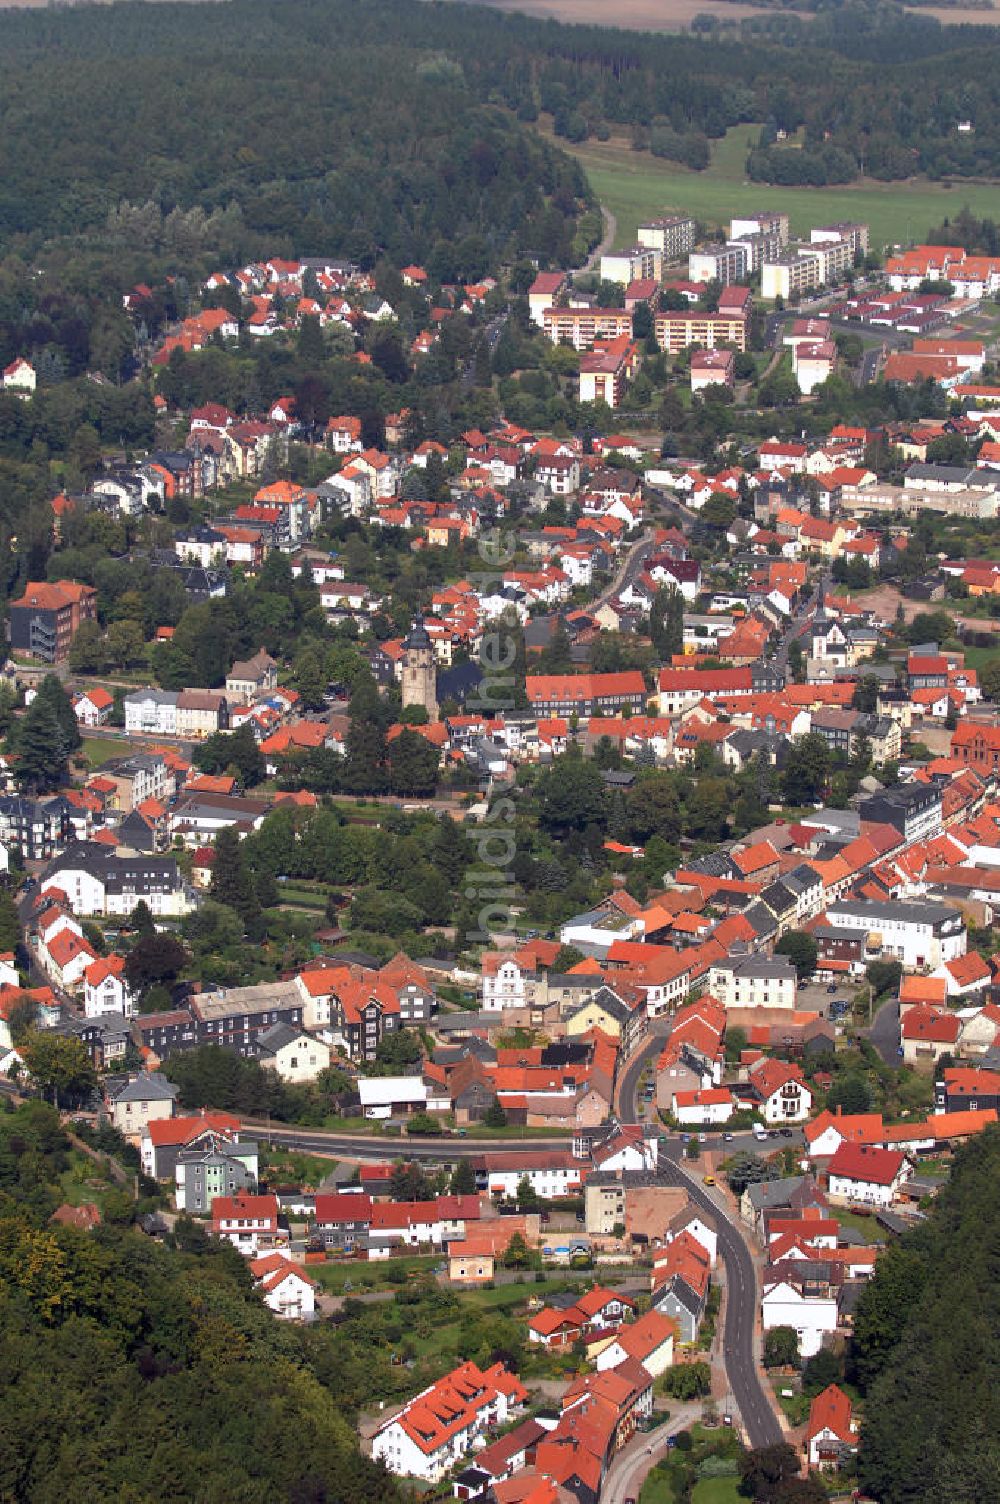 Friedrichroda von oben - Blick auf die Stadt Friedirchroda im Landkreis Gotha in Thüringen